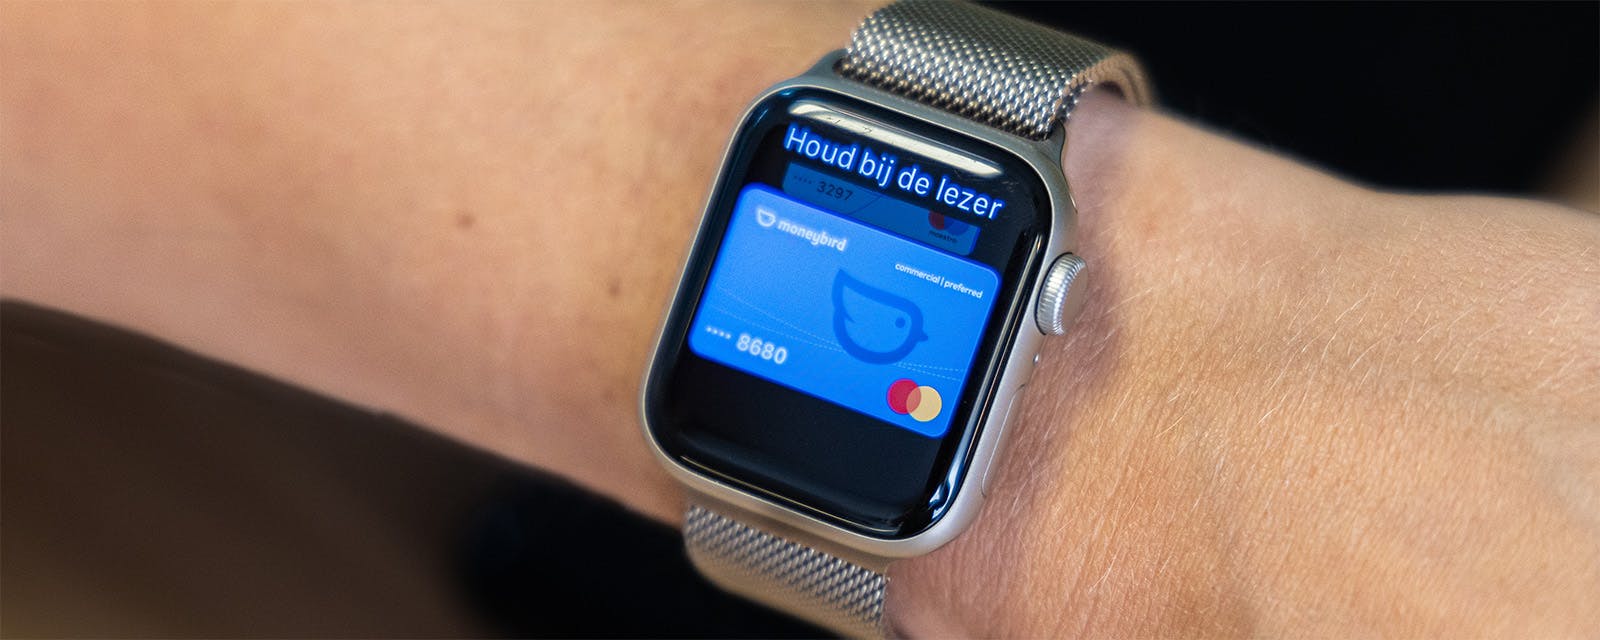 Apple watch aan arm met Moneybird betaalpas